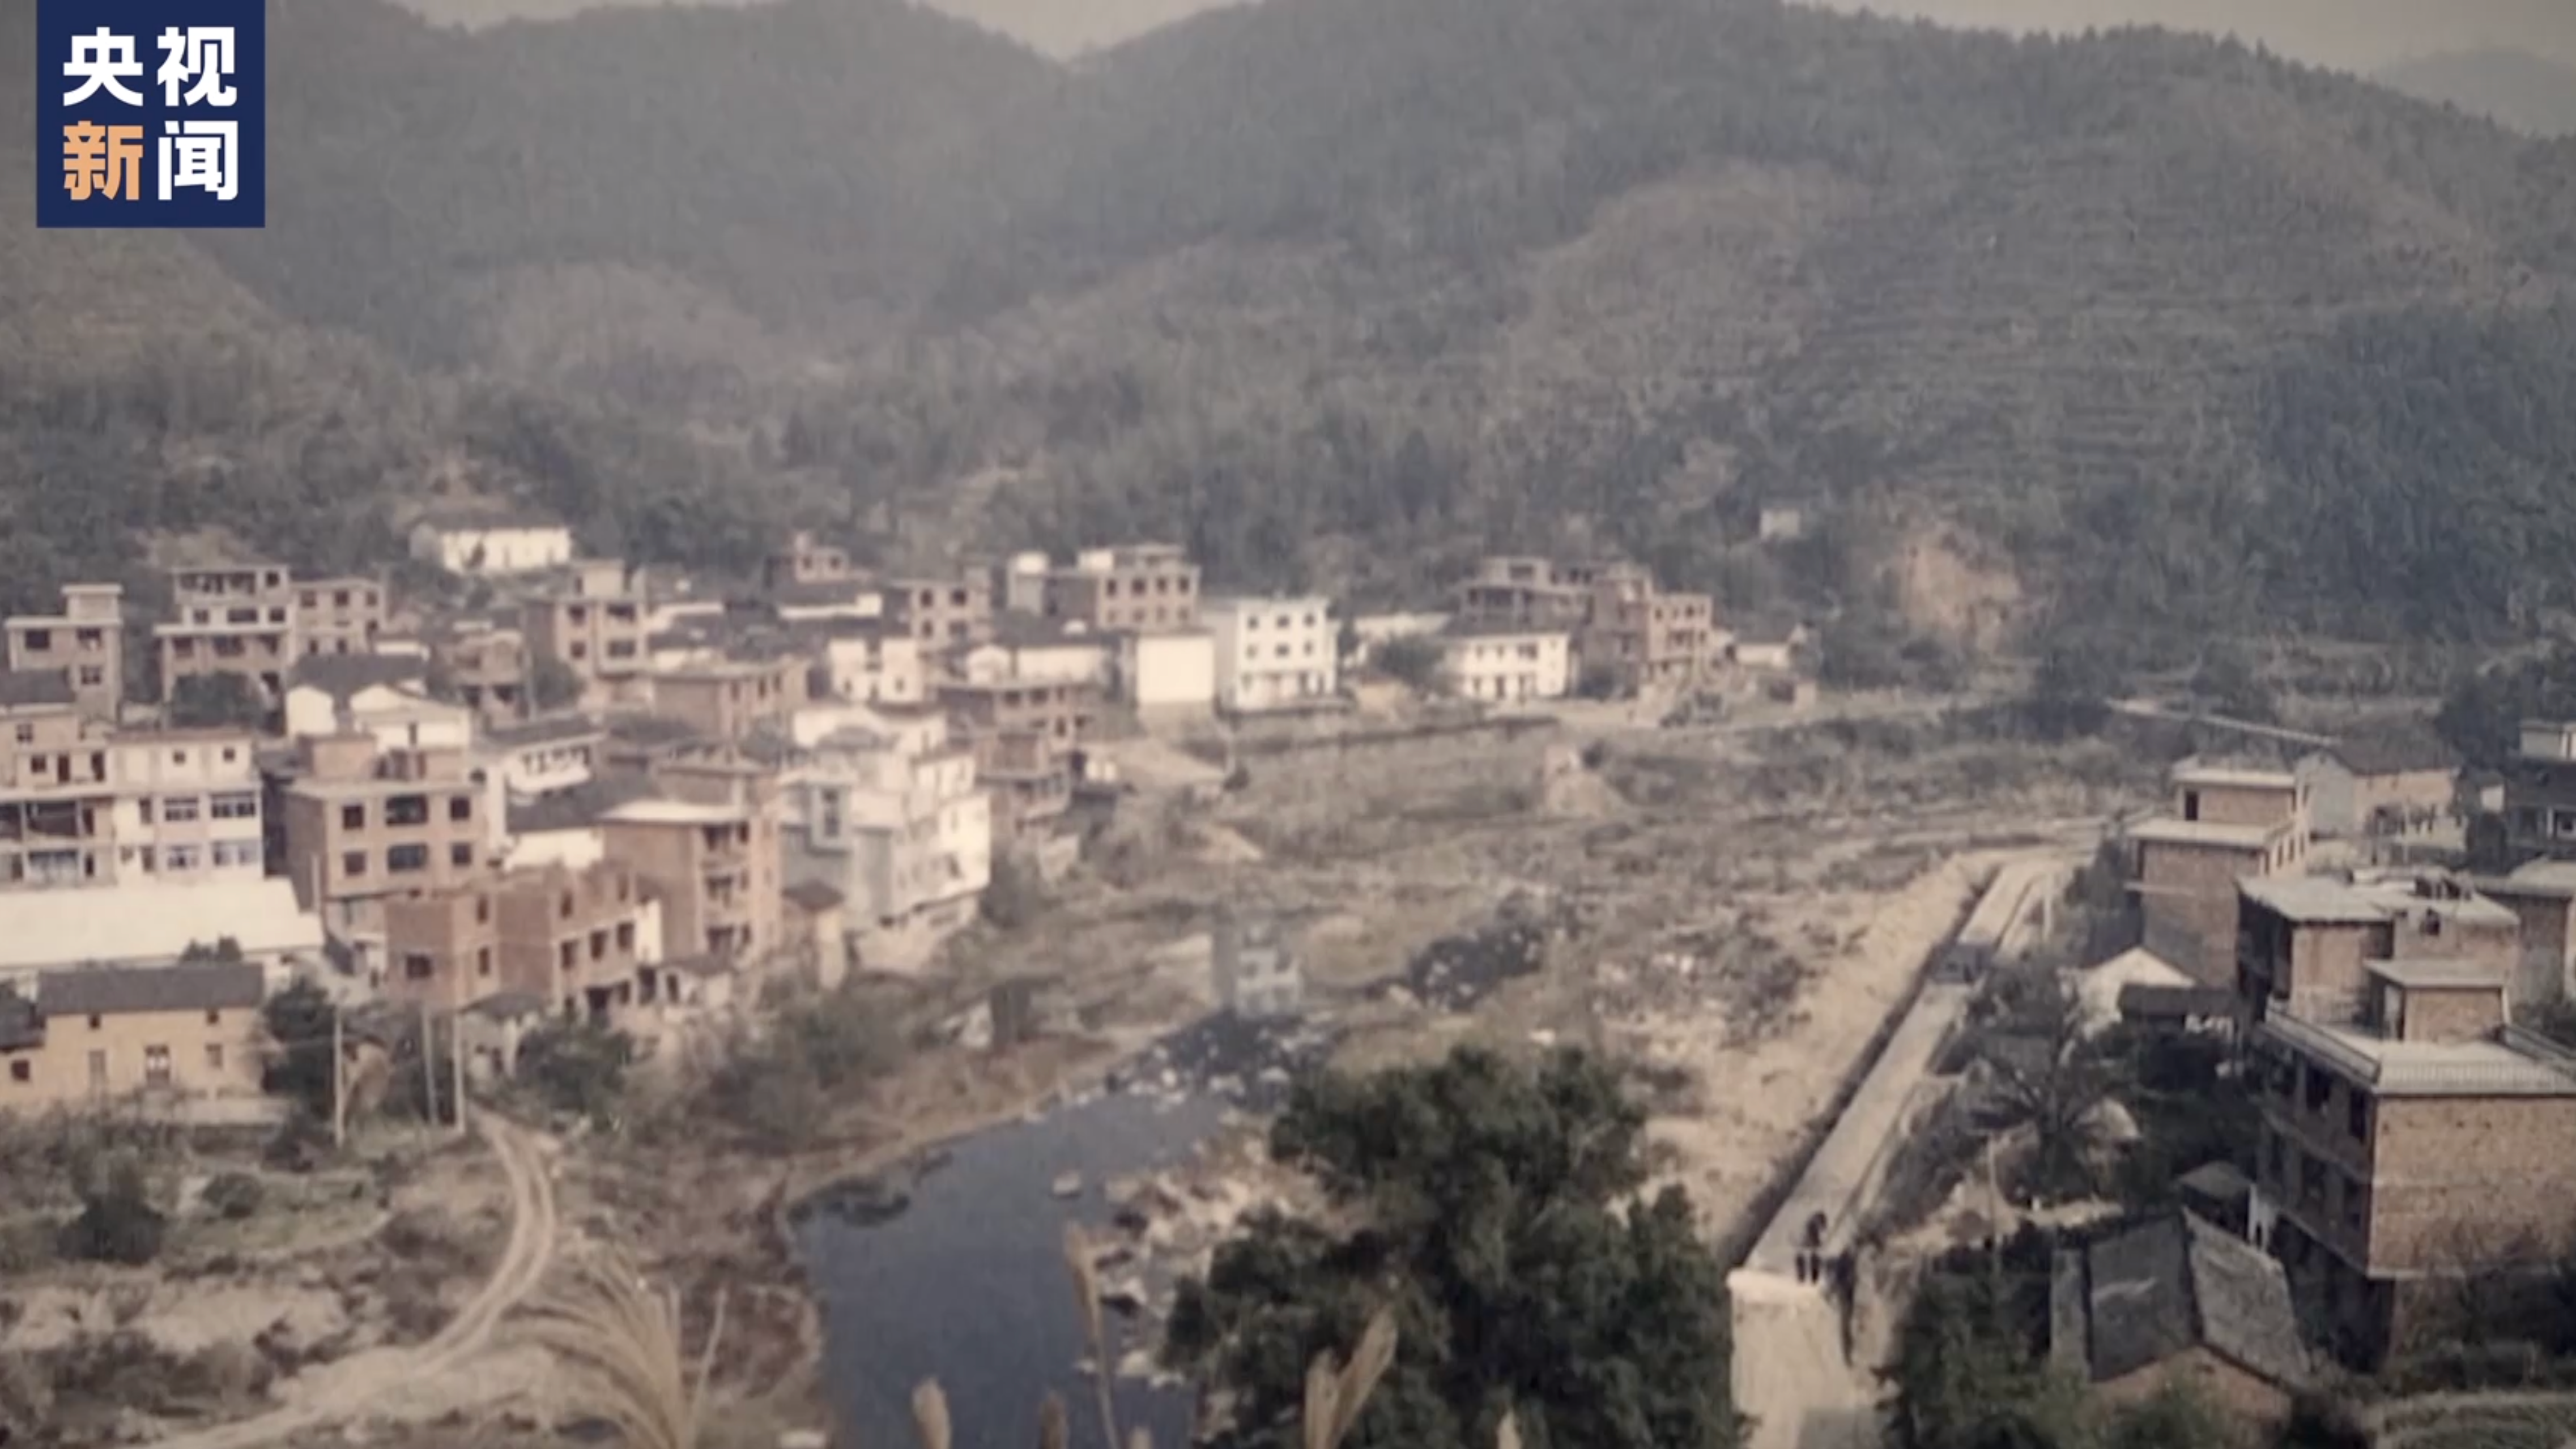 A view of Xiajiang Village in Chun'an County in east China's Zhejiang Province in 2003. 